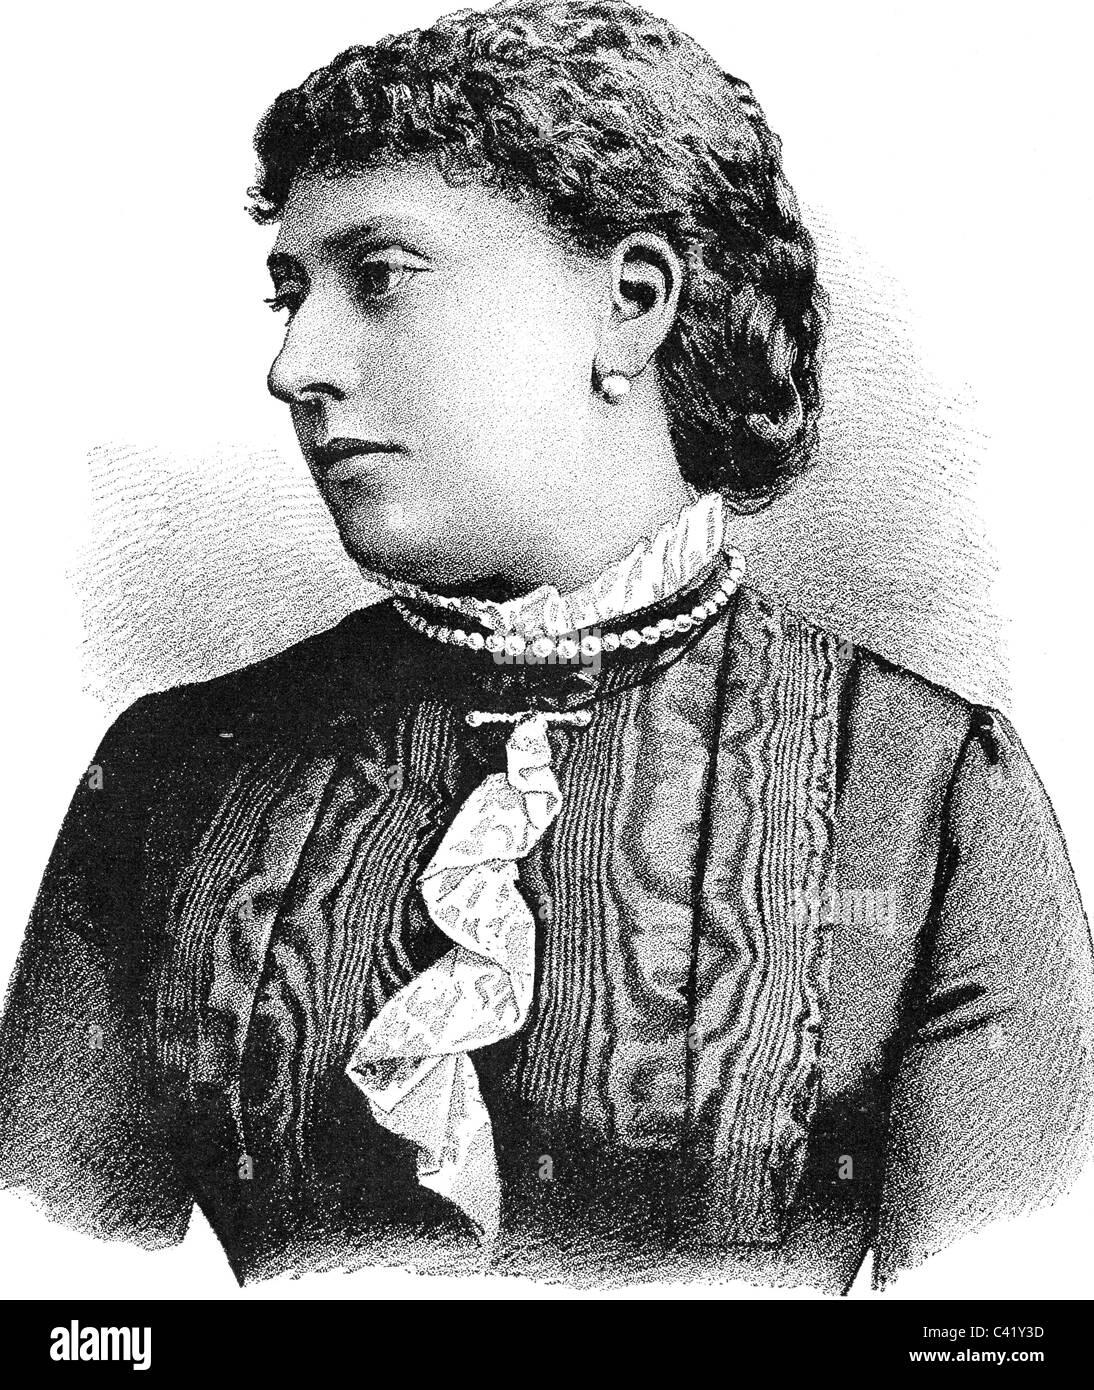 Battenberg, Beatrice principessa di, 14.4.1857 - 26.10.1944, ritratto, incisione in legno, fine 19th secolo, Foto Stock